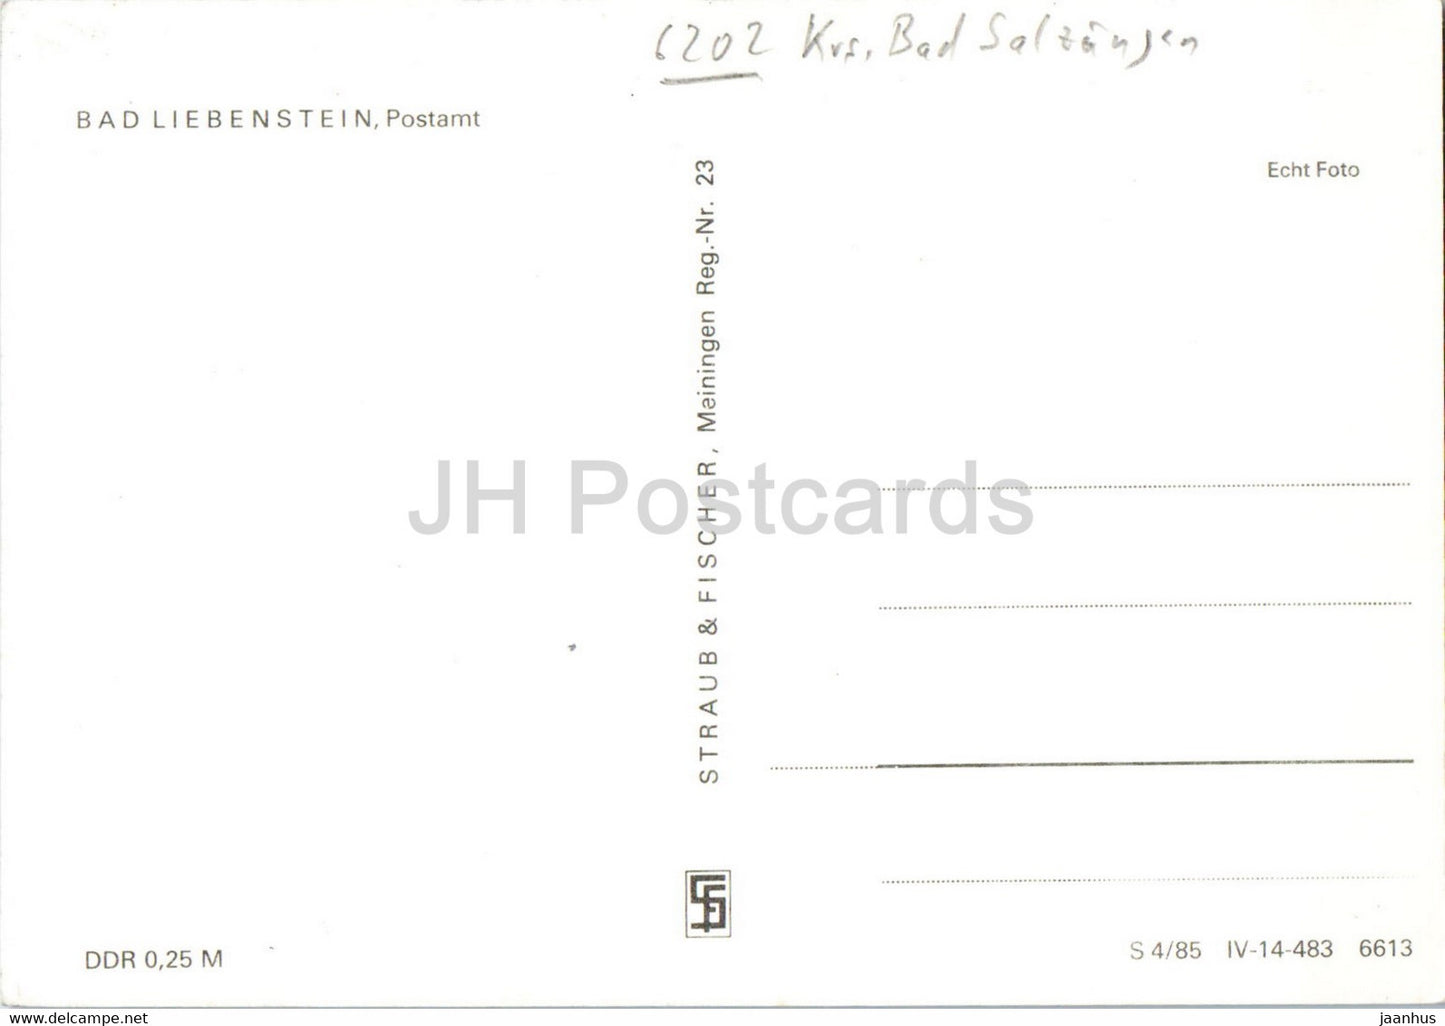 Bad Liebenstein - Postamt - Bureau de poste - 1 - Allemagne DDR - inutilisé